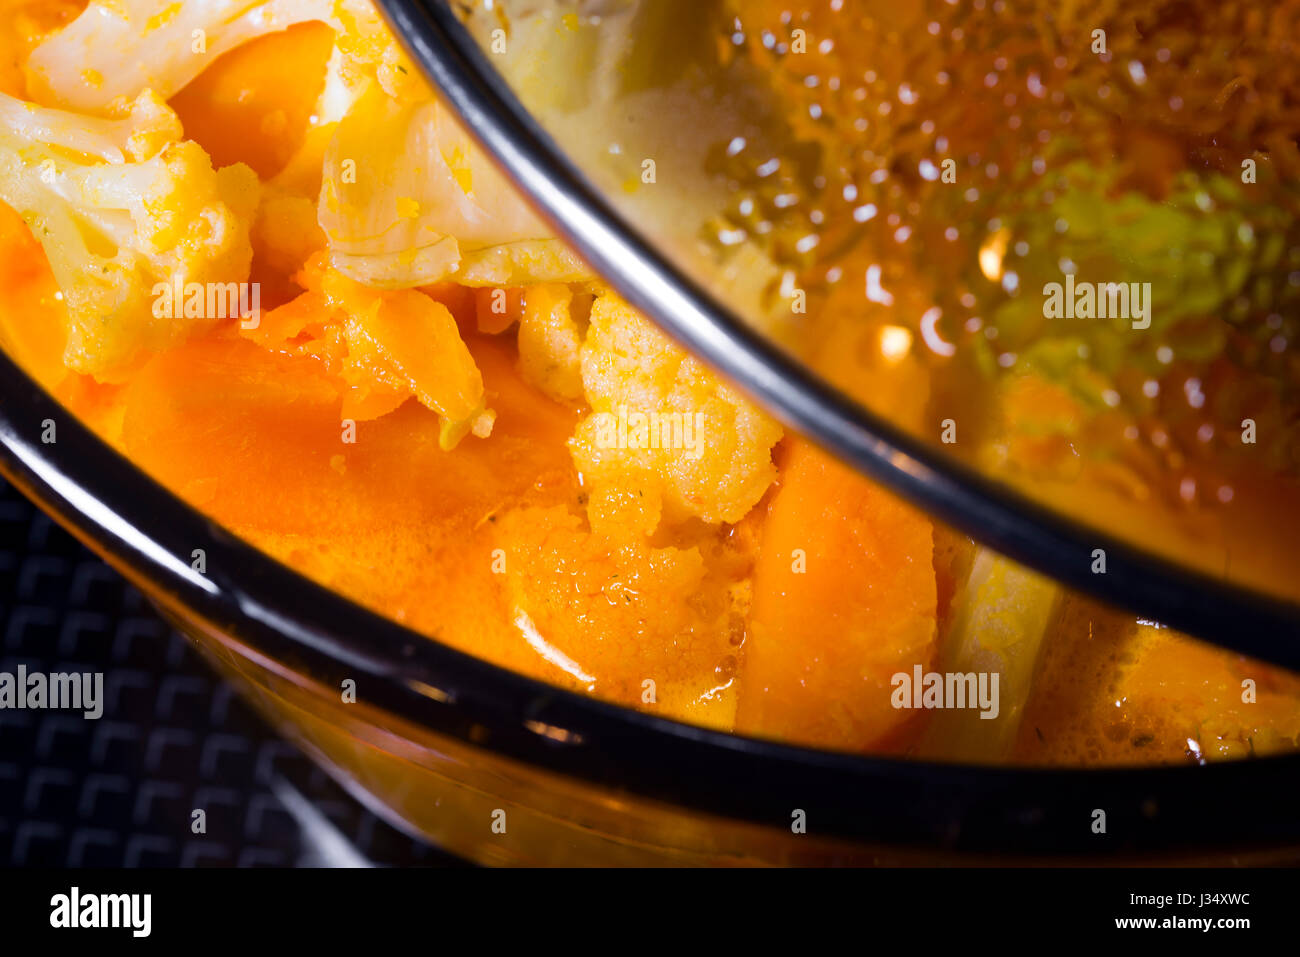 Casserole avec couvercle en verre dans lequel ajar citrouille cuite de soupe aux légumes avec les tranches de légumes. Ensemble de légumes - c'est une option de budget bon marché de d Banque D'Images